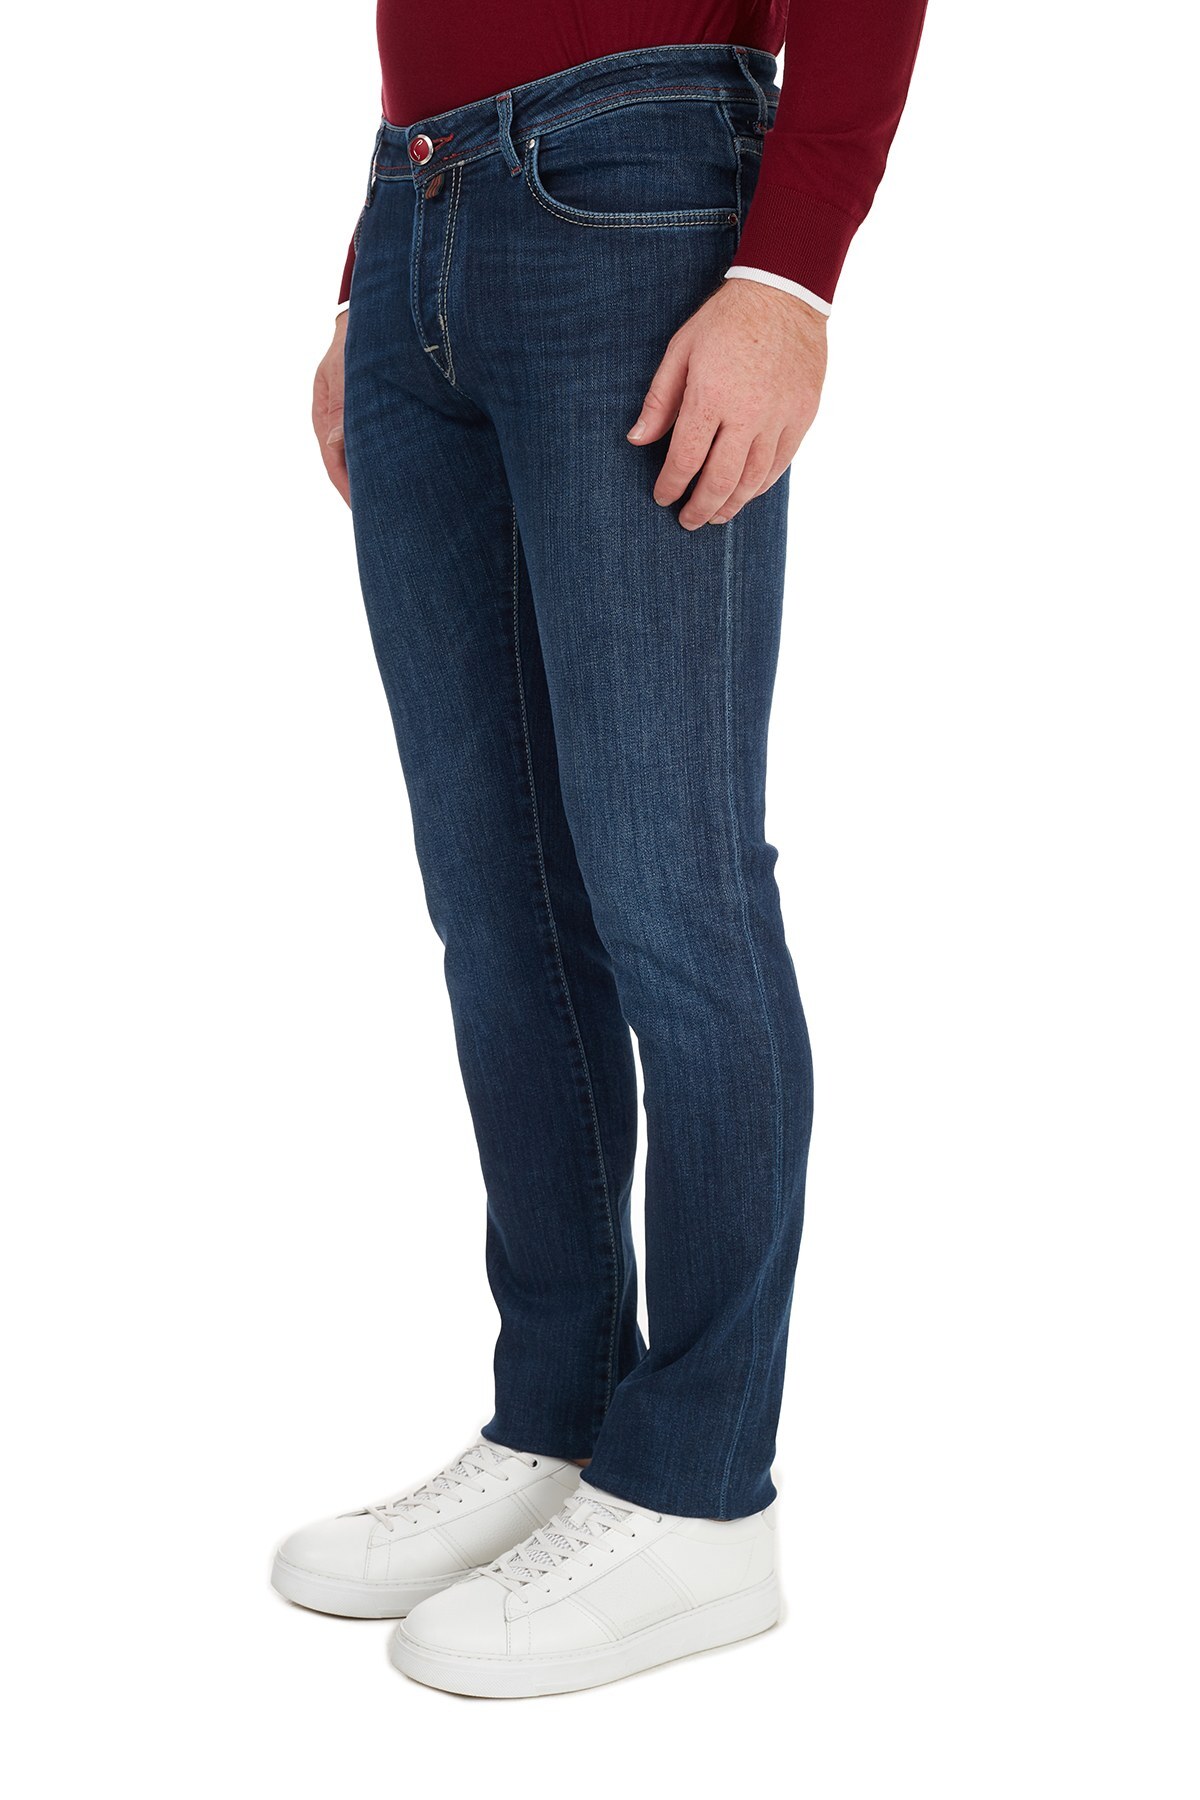 Jacob Cohen Pamuklu Jeans Erkek Kot Pantolon J622 00709W2 MAVİ